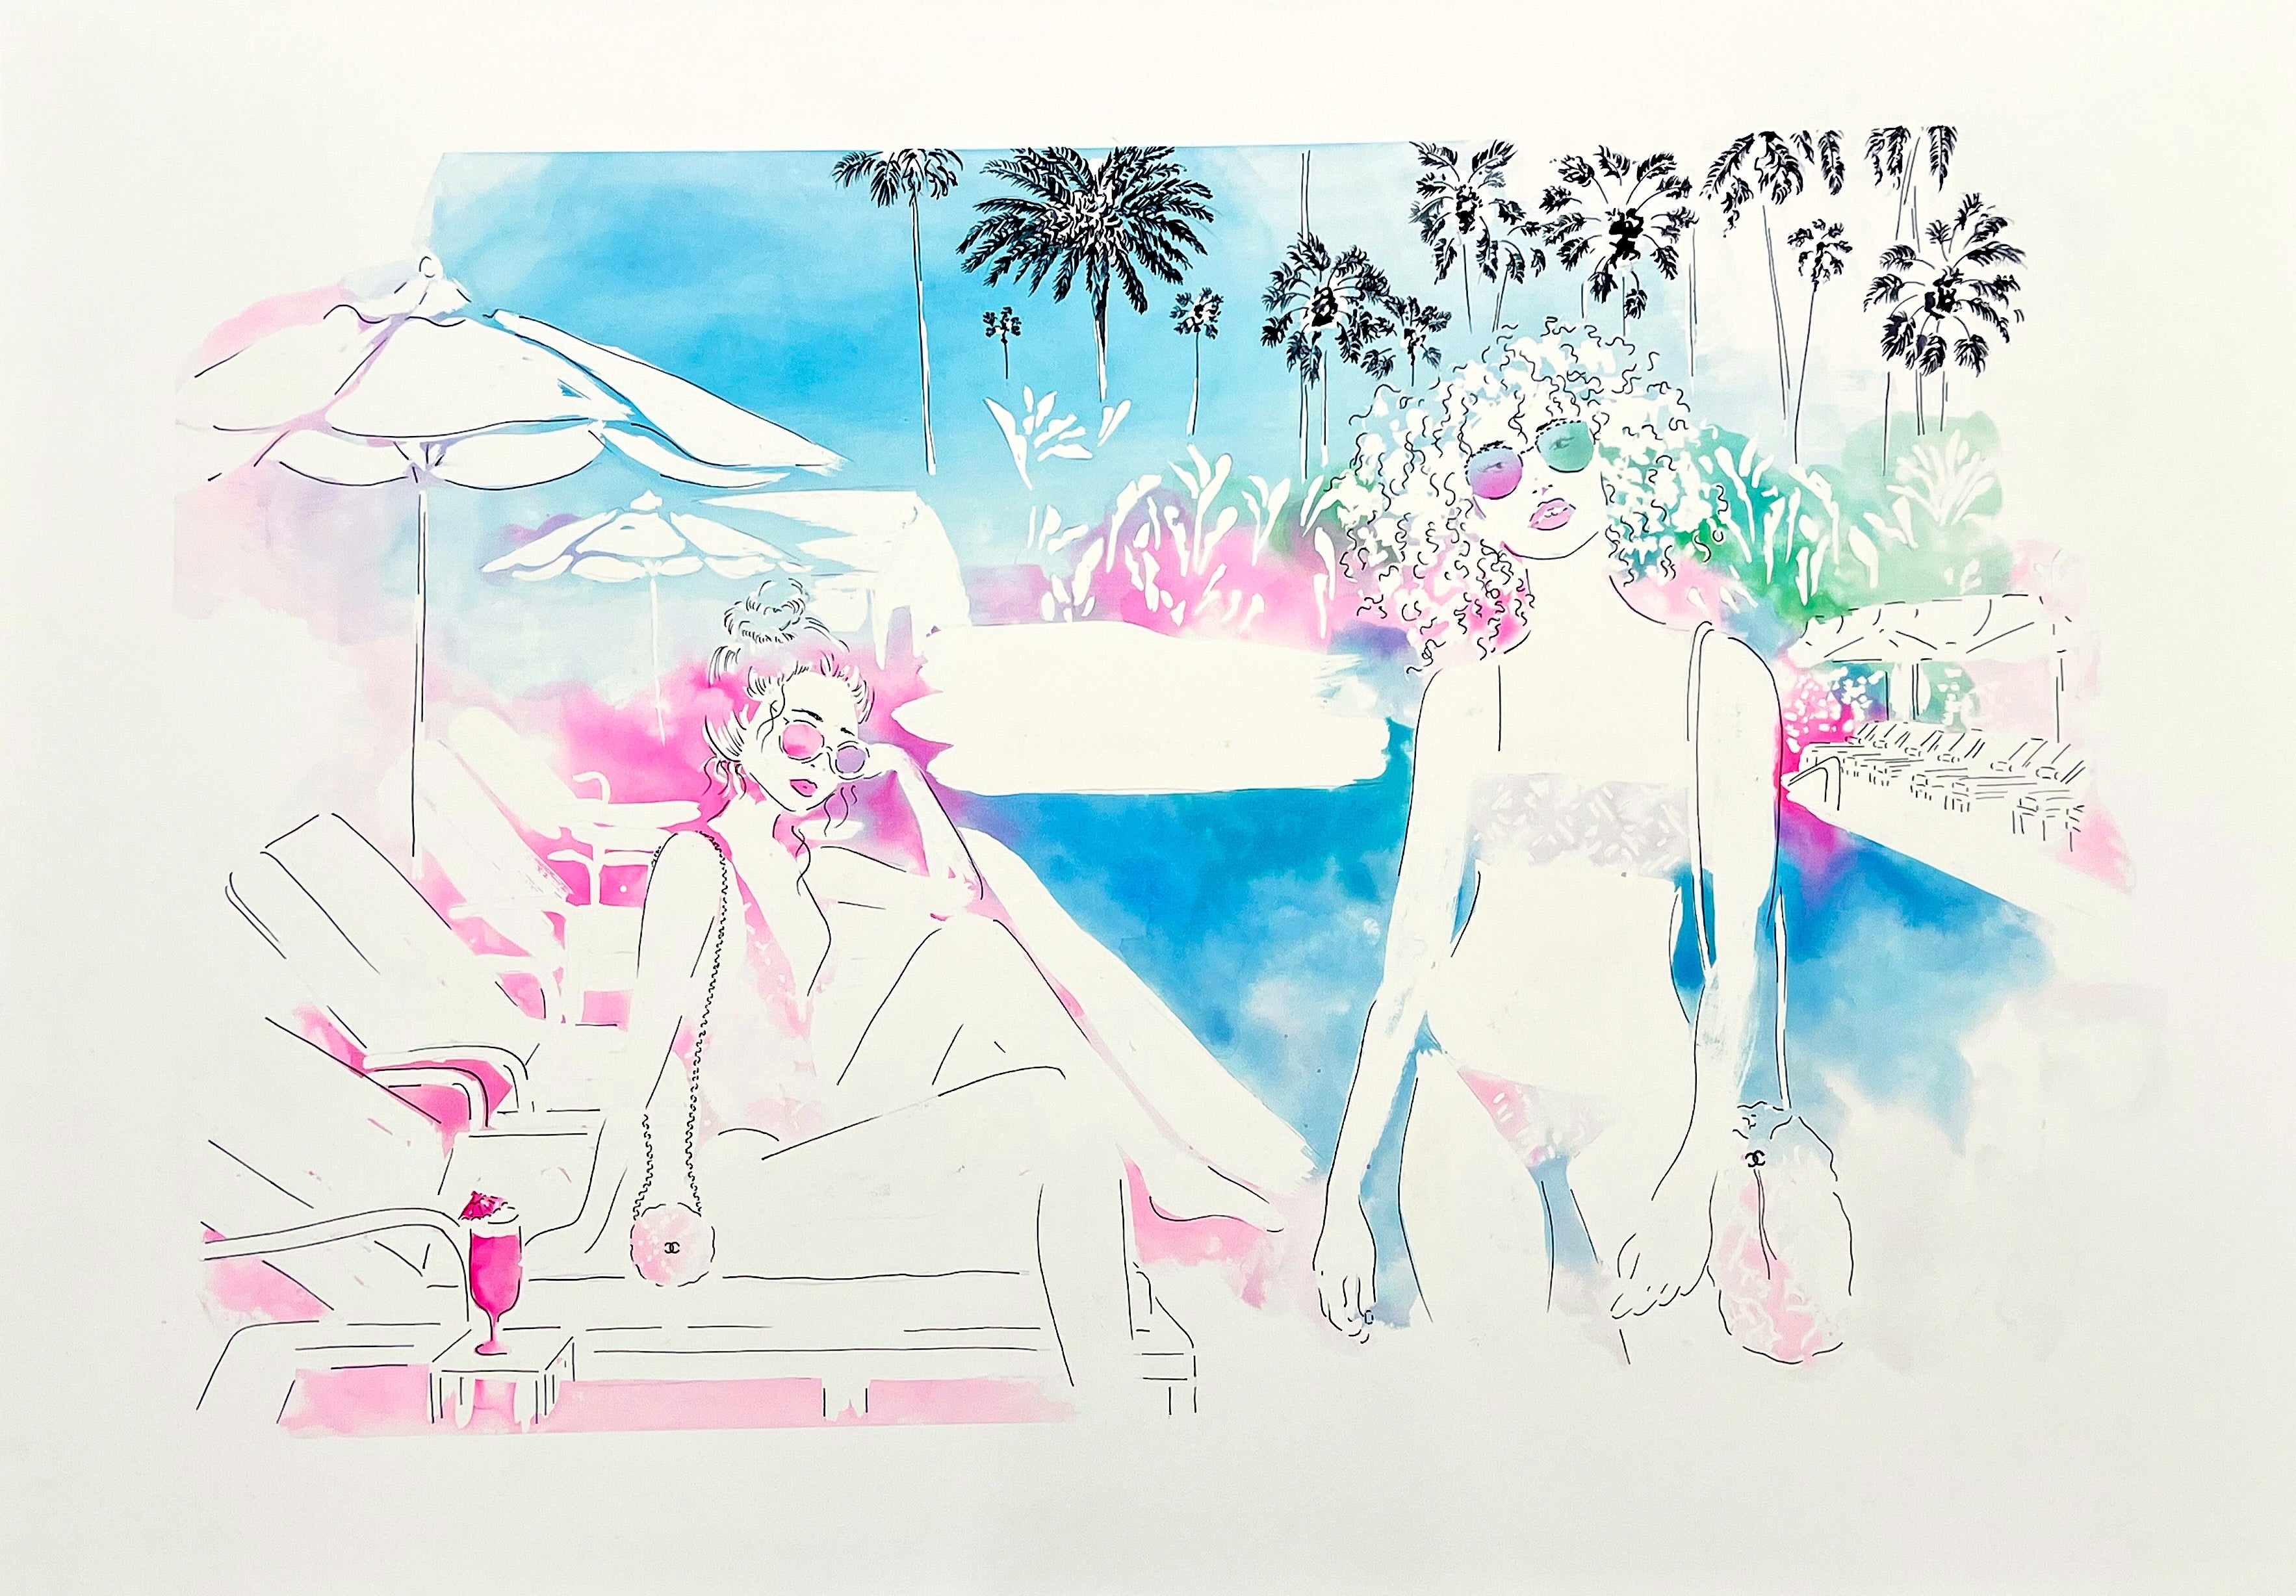 Retrouvez toutes les oeuvres de l'illustratrice Vicki Louise Ward chez Acid Gallery, galerie d'art contemporain dans le Vieux-Lille | Los Angeles collection Aquarelle 70X100